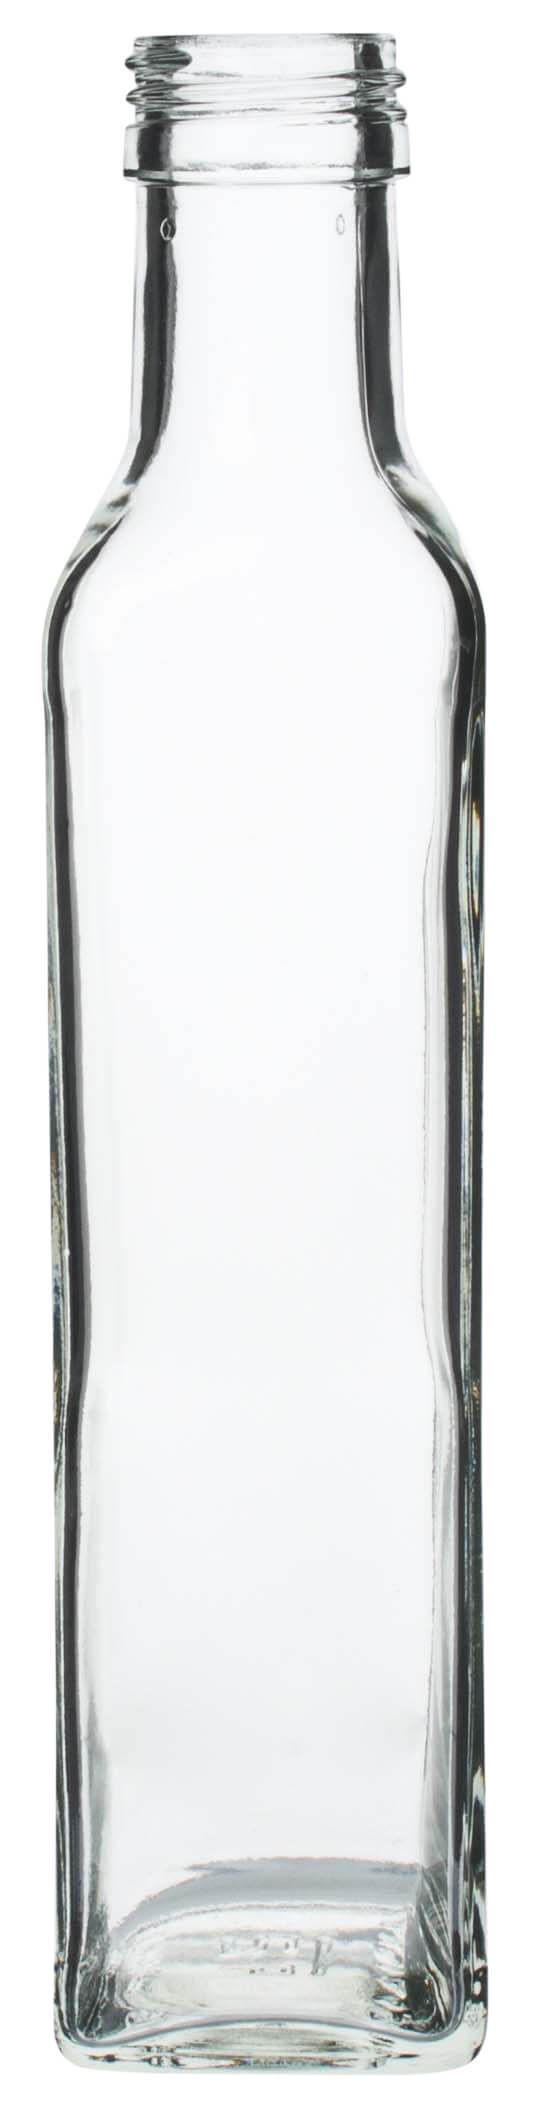 Glasflasche eckig - 250ml